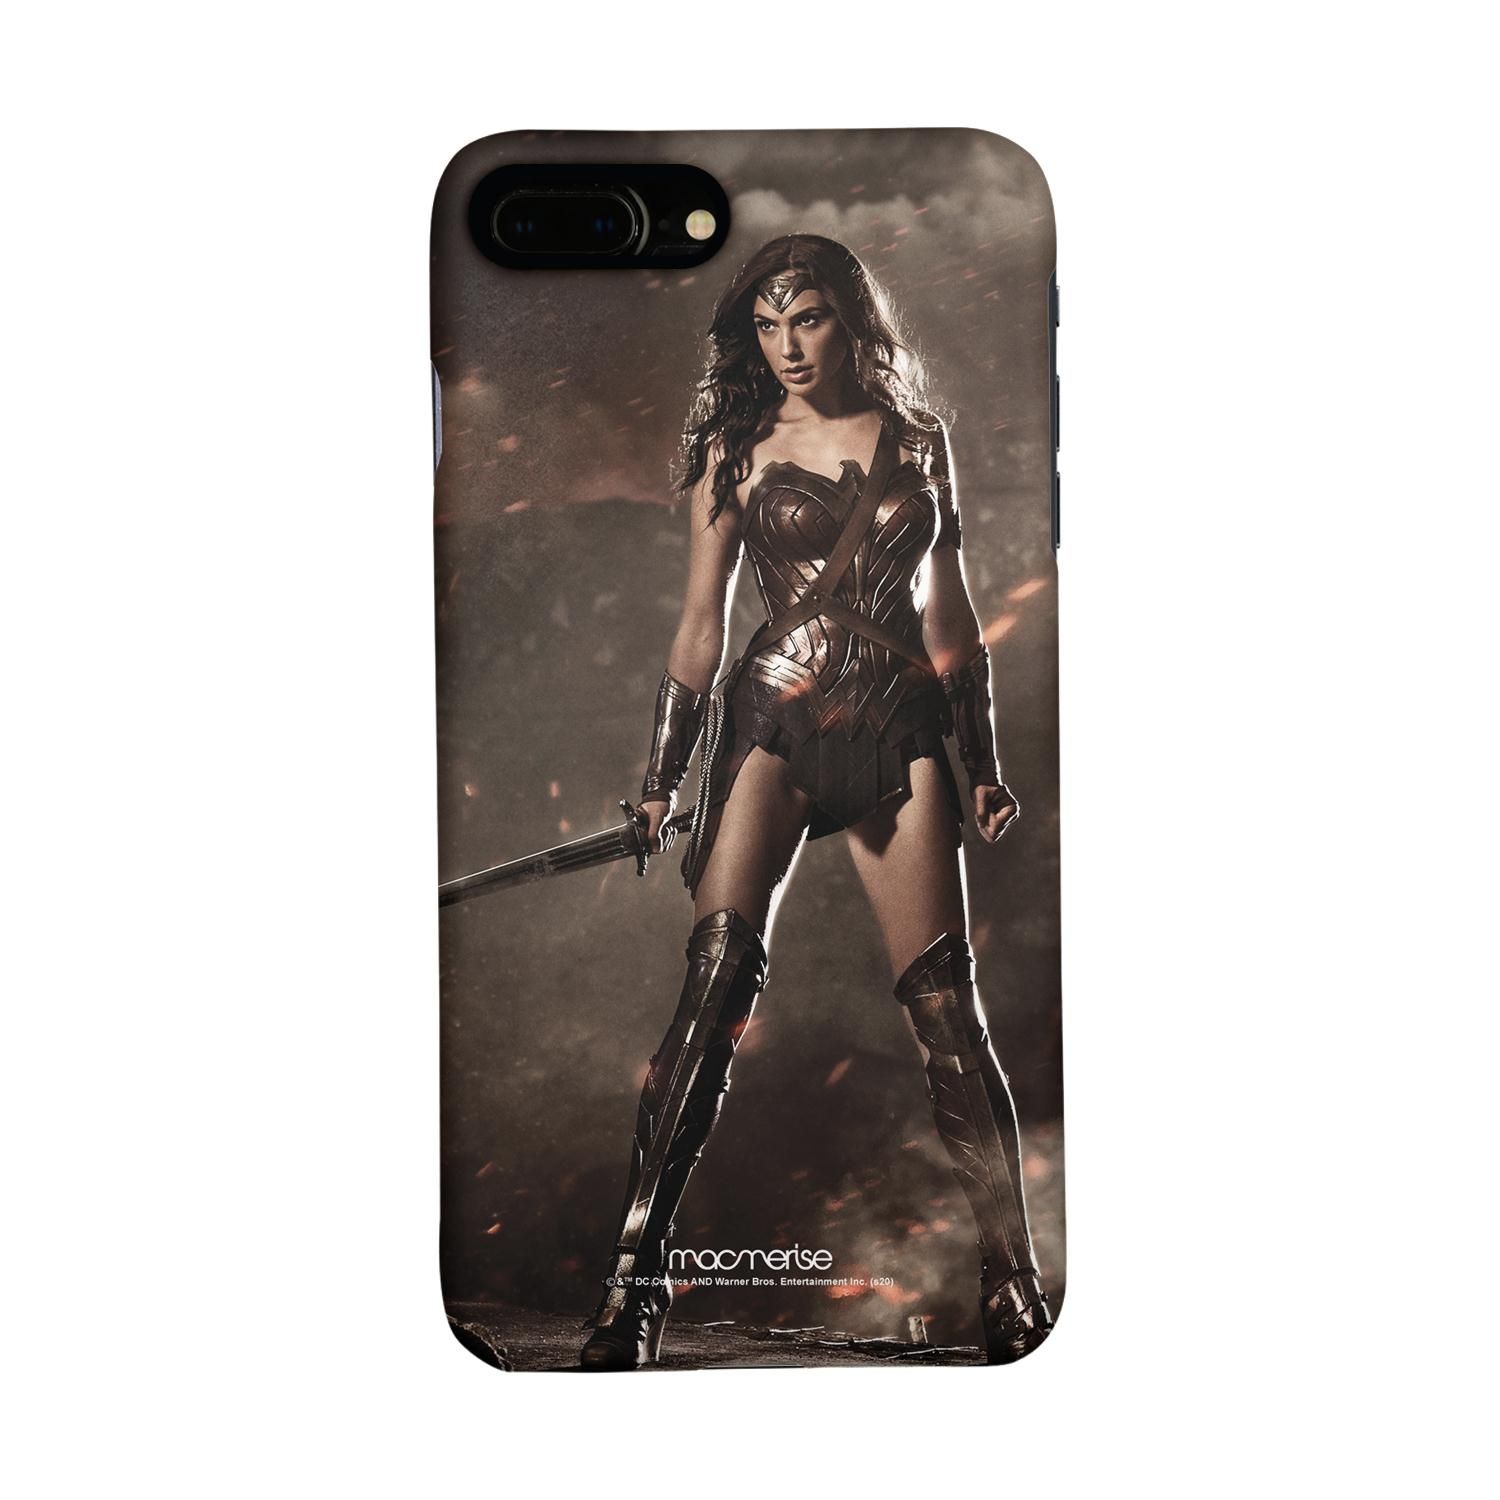 Buy Lethal Wonderwoman - Sleek Phone Case for iPhone 7 Plus Online